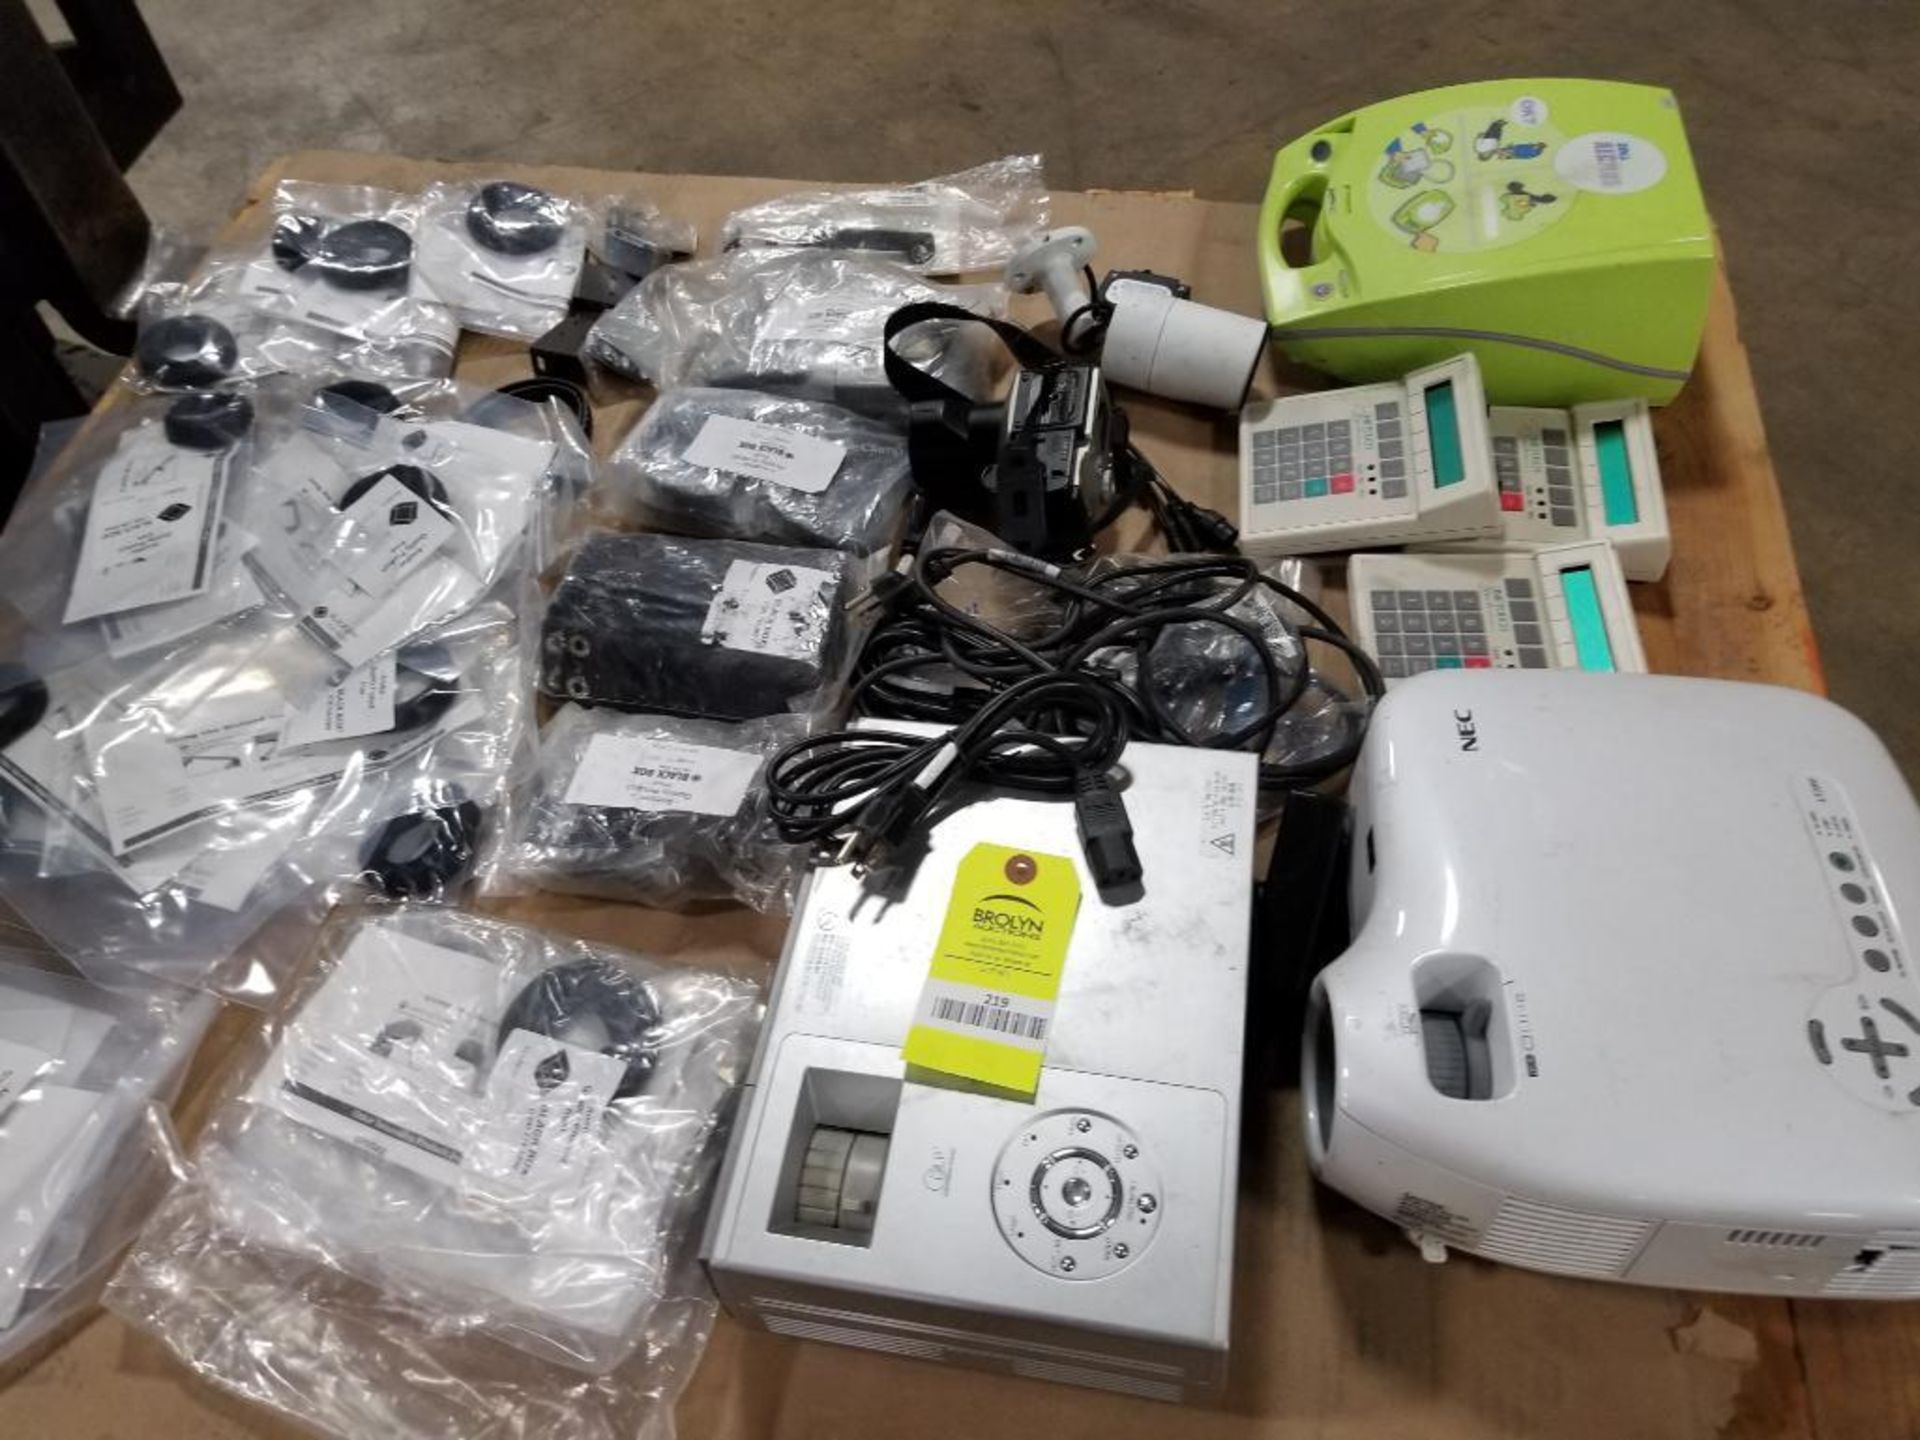 Pallet of assorted electrical. Projectors, calculators, defibrillator, camera.